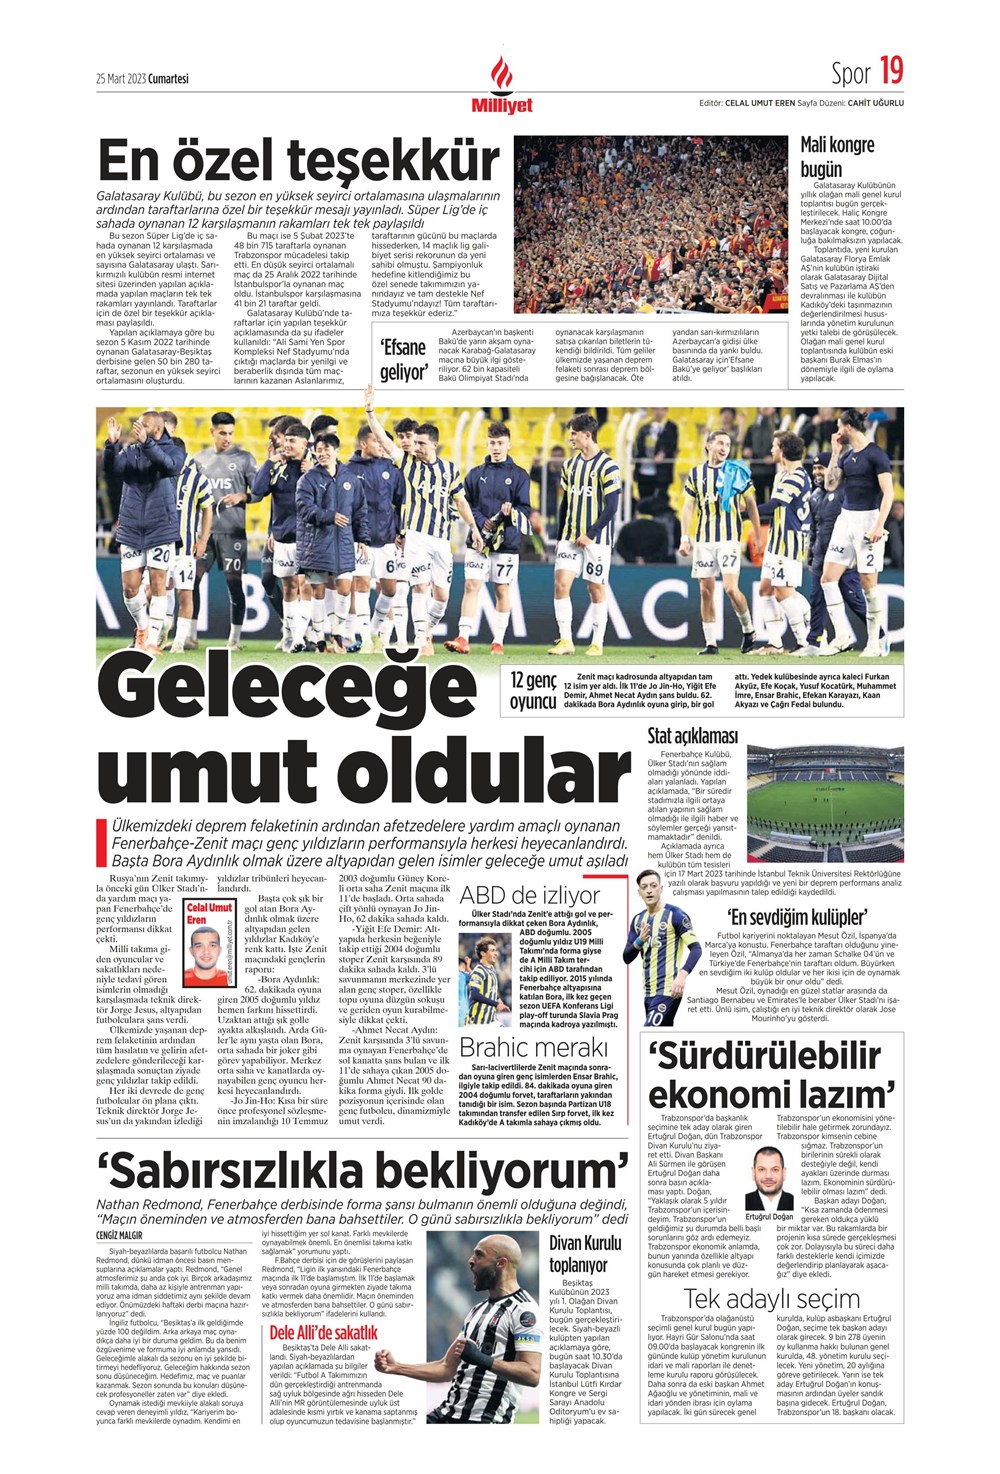 "Yeni bir başlangıç" - Sporun manşetleri - 23. Foto